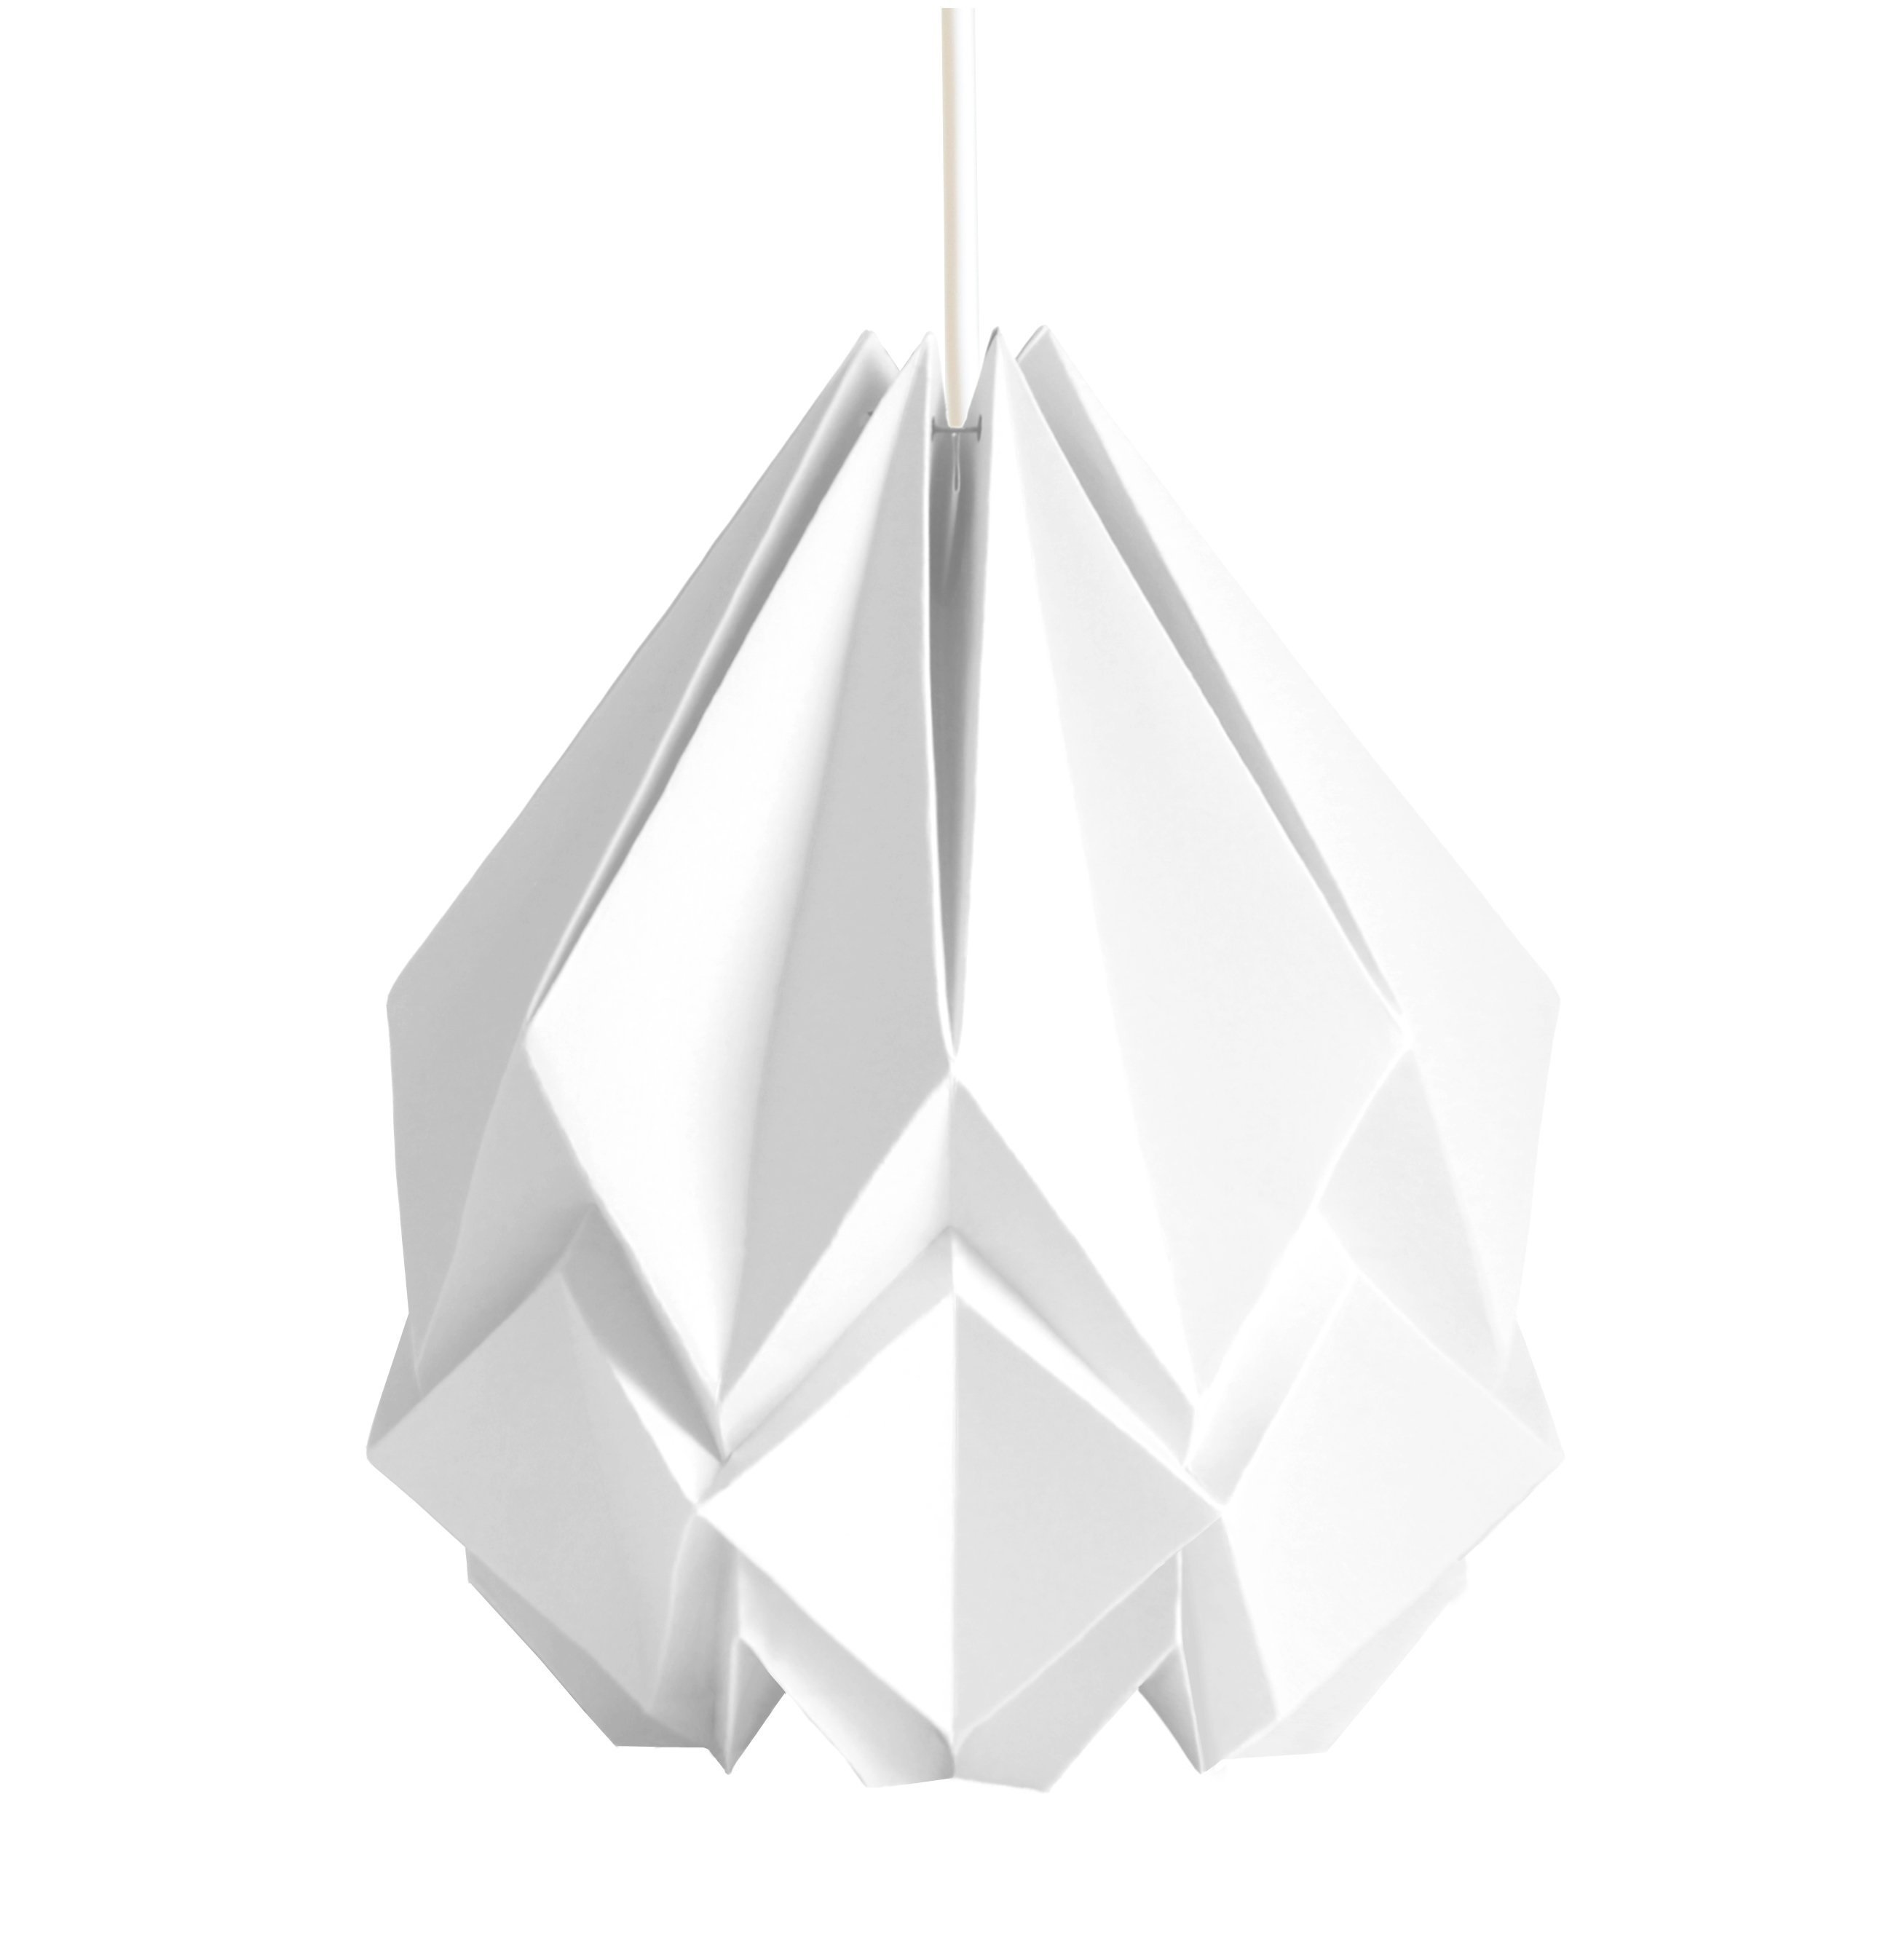 Suspension origami couleur unie en papier taille XL